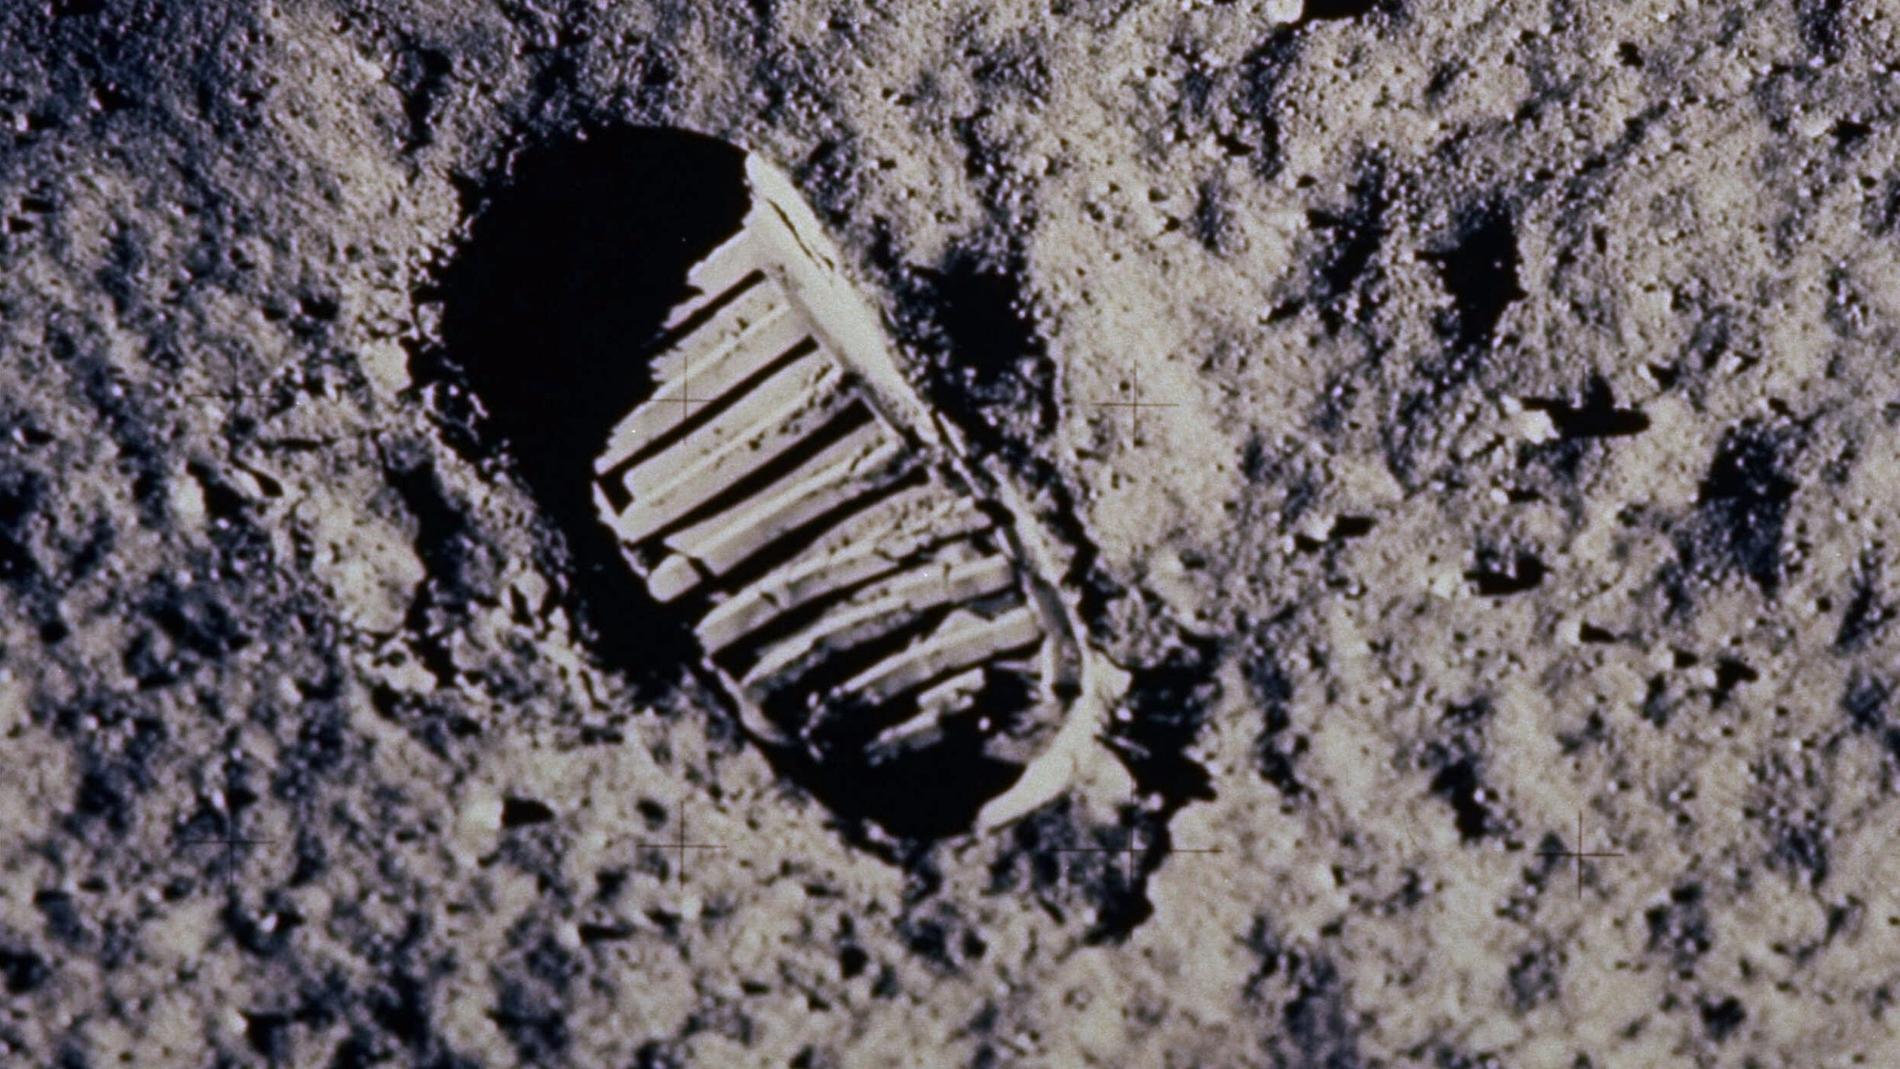 Ett litet steg för en människa, ett gigantiskt kliv för mänskligheten. Den 21 juli 1969 satte människan för första gången sin fot på en främmande himlakropp. Ett historiskt ögonblick.